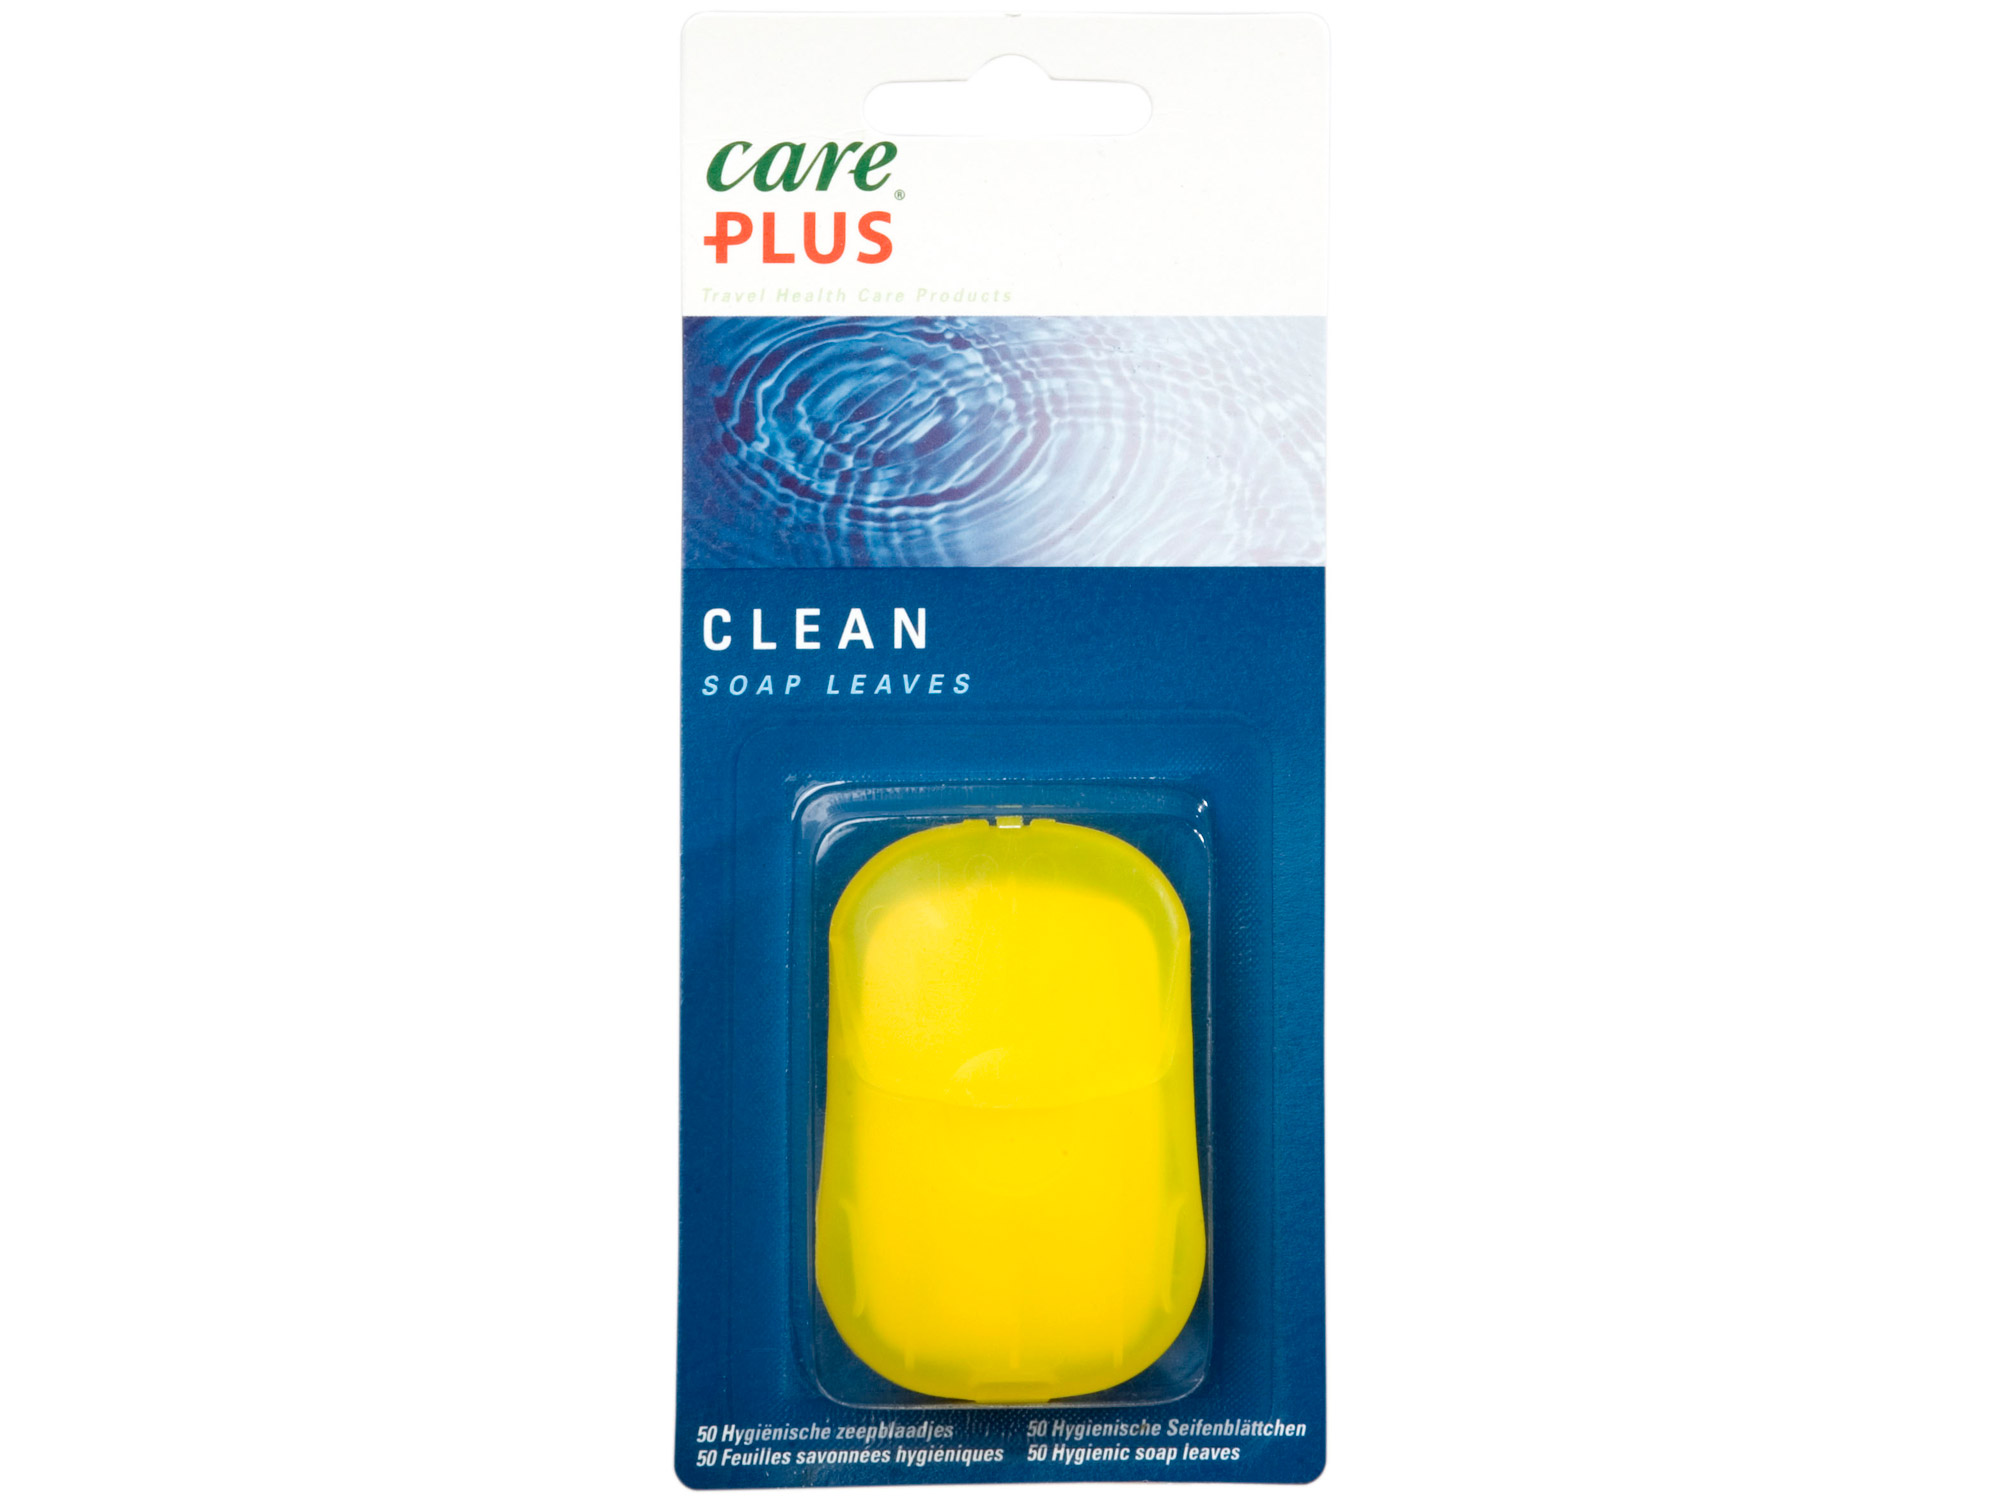 50 parfümierte Seifenblättchen soap leaves Care Plus® Clean 